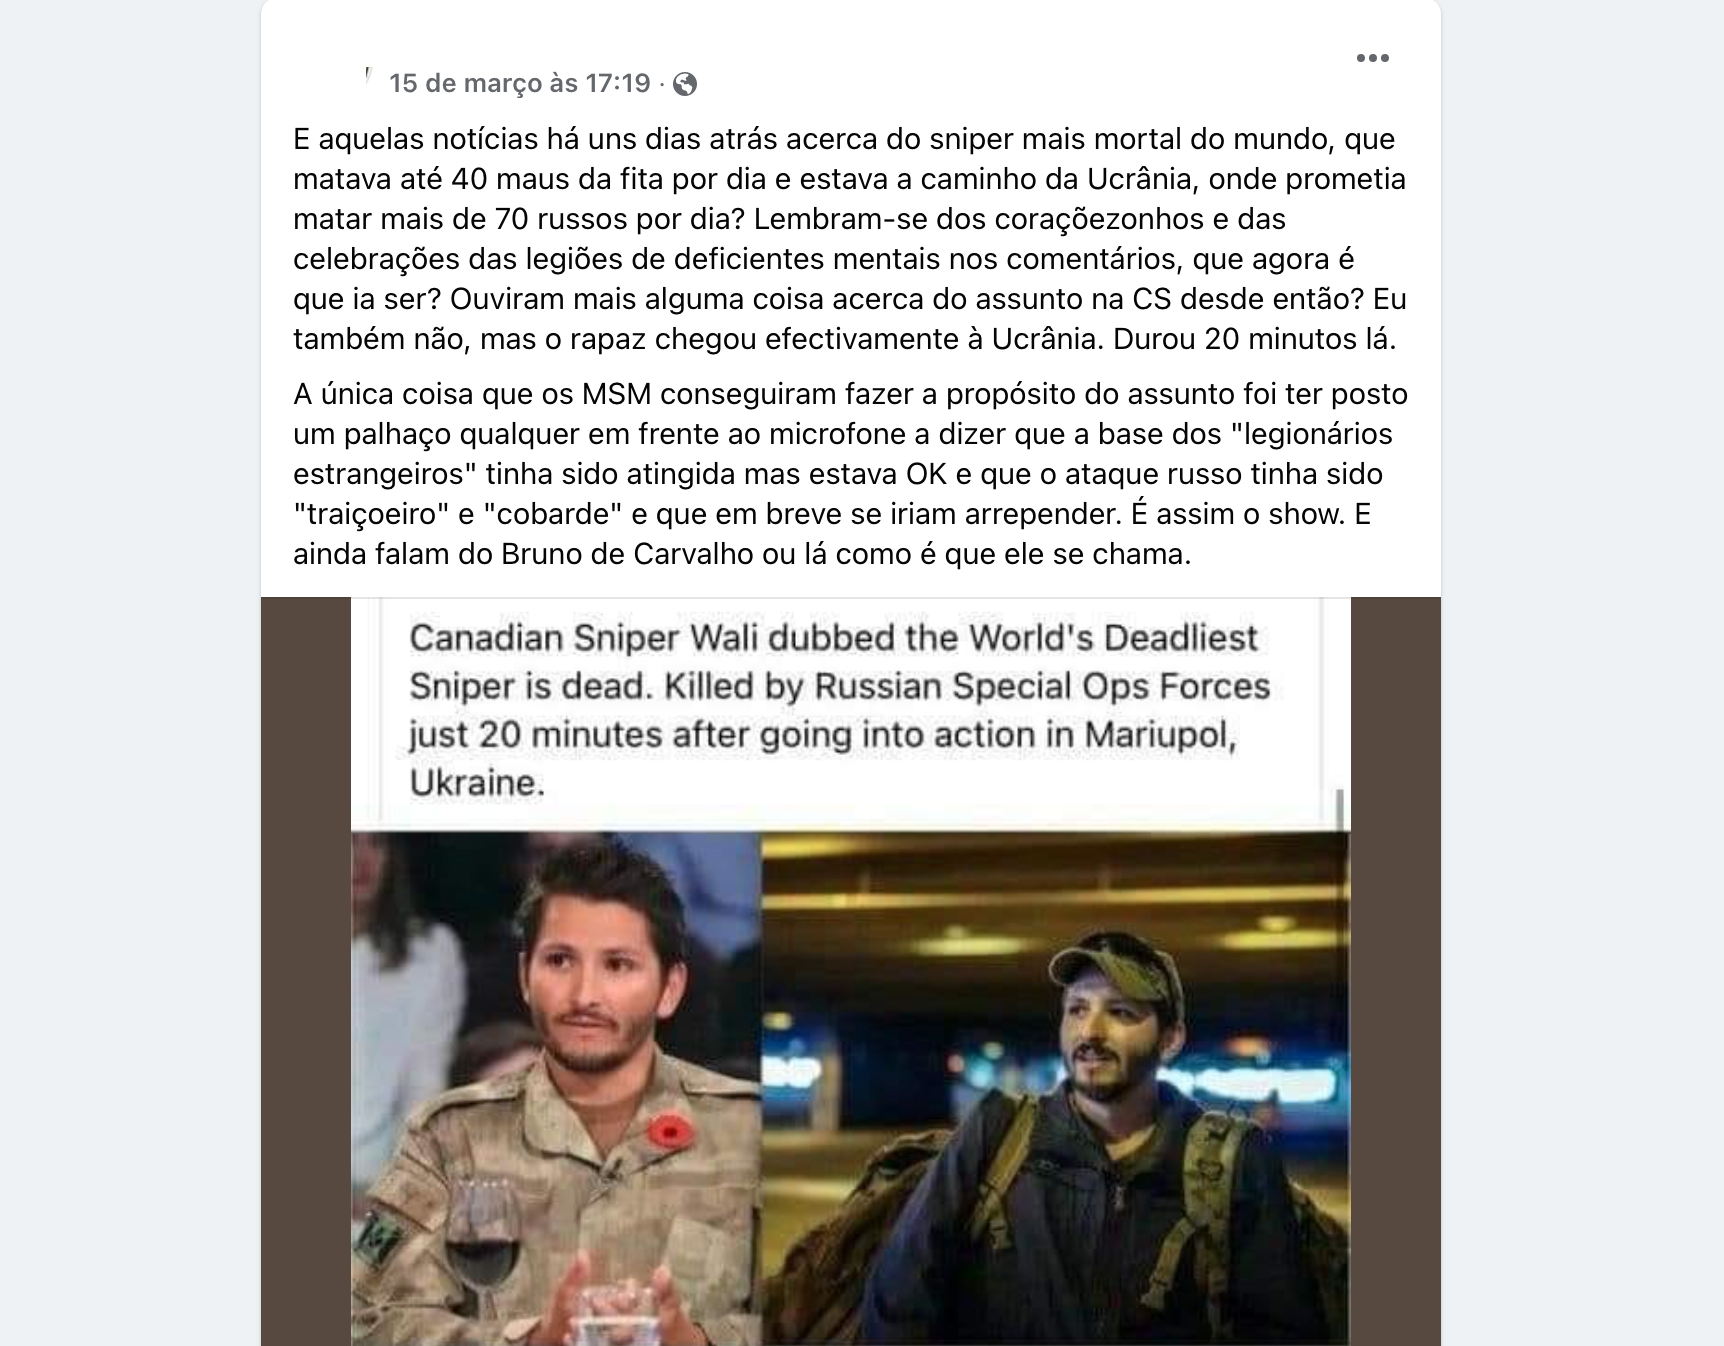 O sniper canadense “Wali” não foi assassinado minutos depois de sua chegada  à Ucrânia